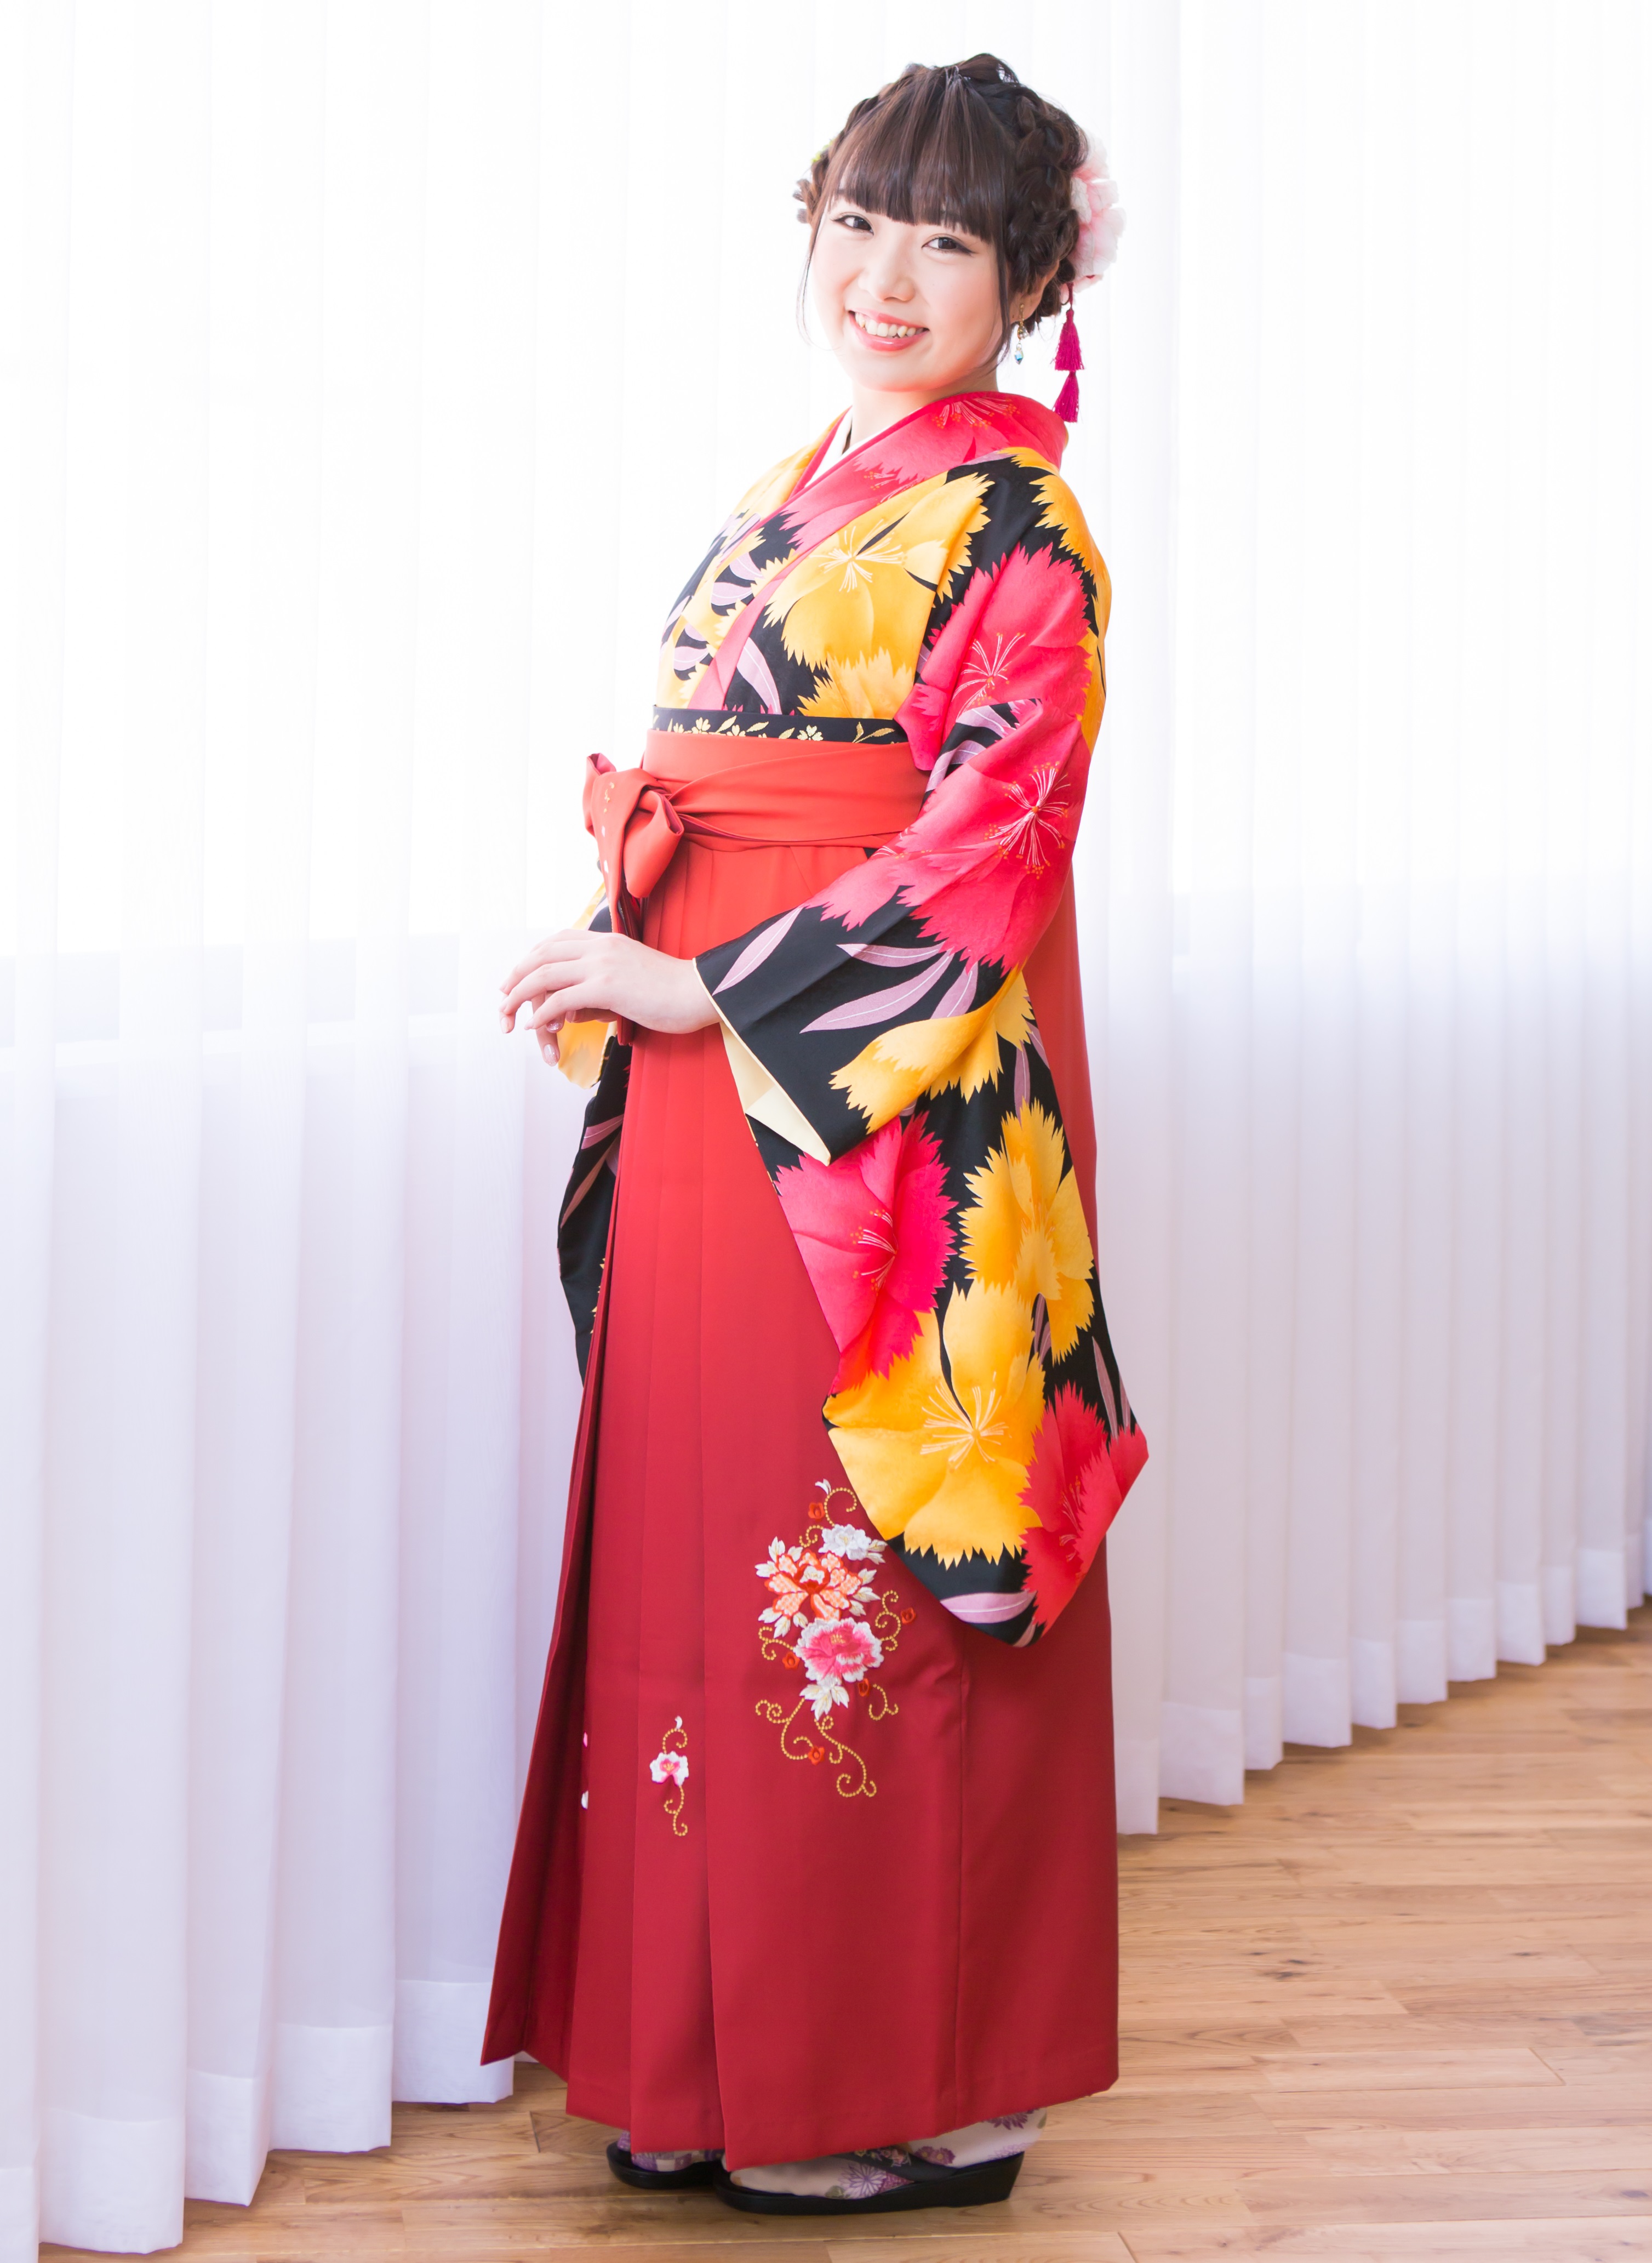 着物/920 袴/6100 - 新潟の卒業式着物・袴レンタル 株式会社とまつ衣裳店